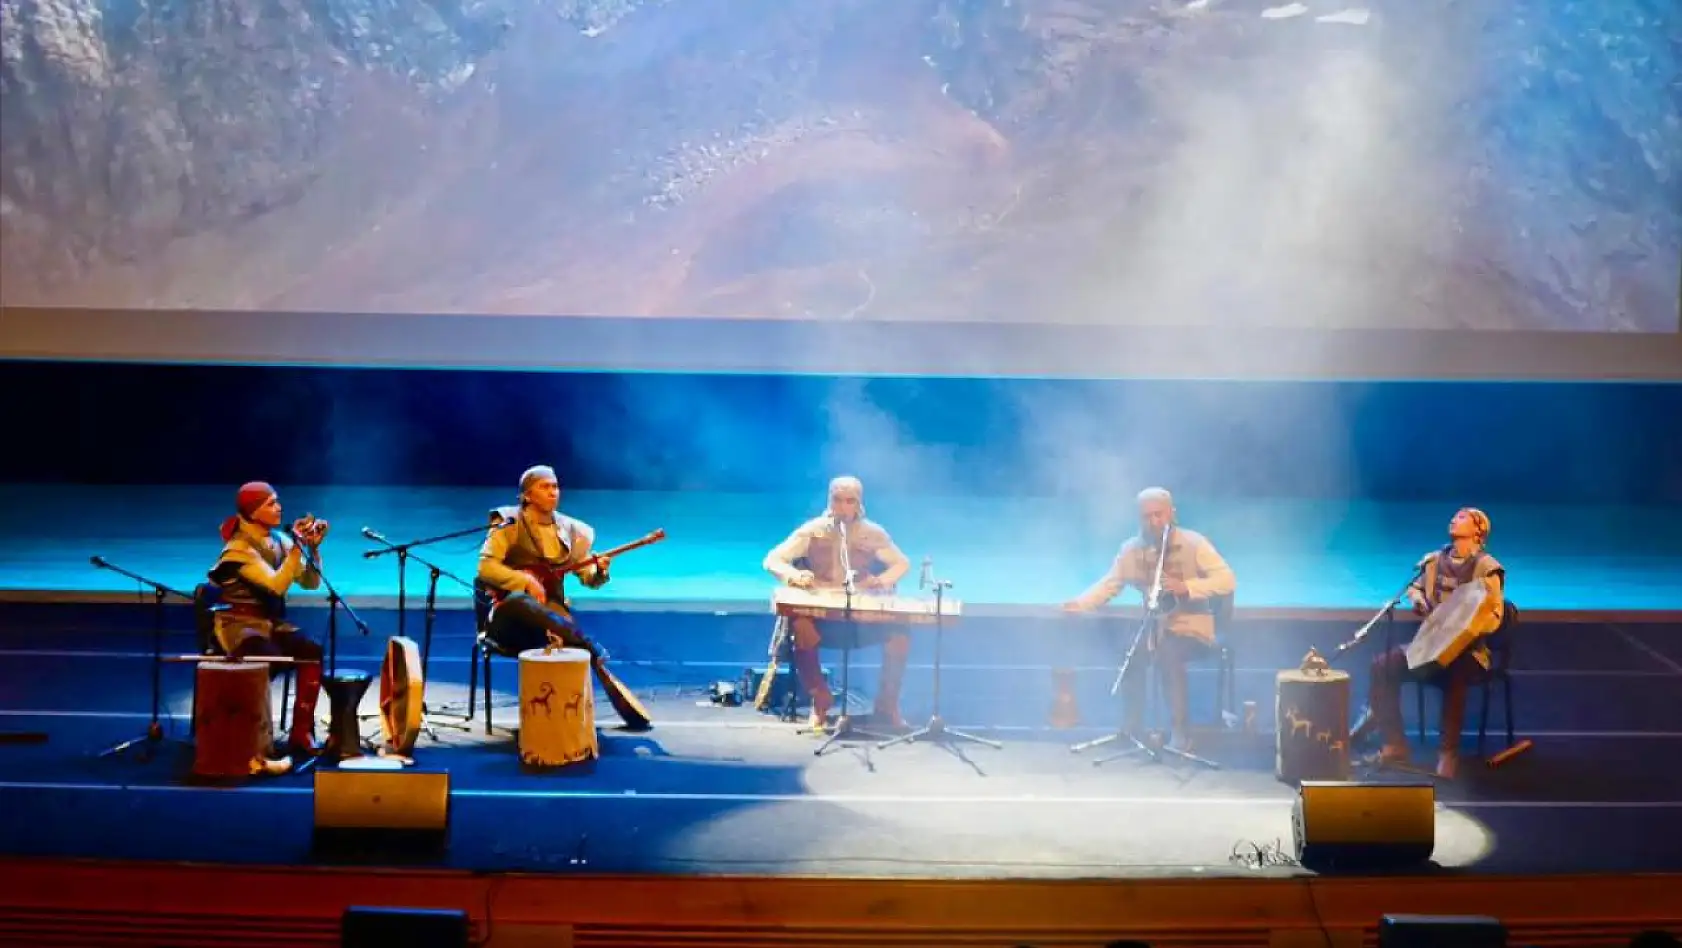 Erciyes Üniversitesinde canlı performans... Türk dünyasının sevilen müzikleri